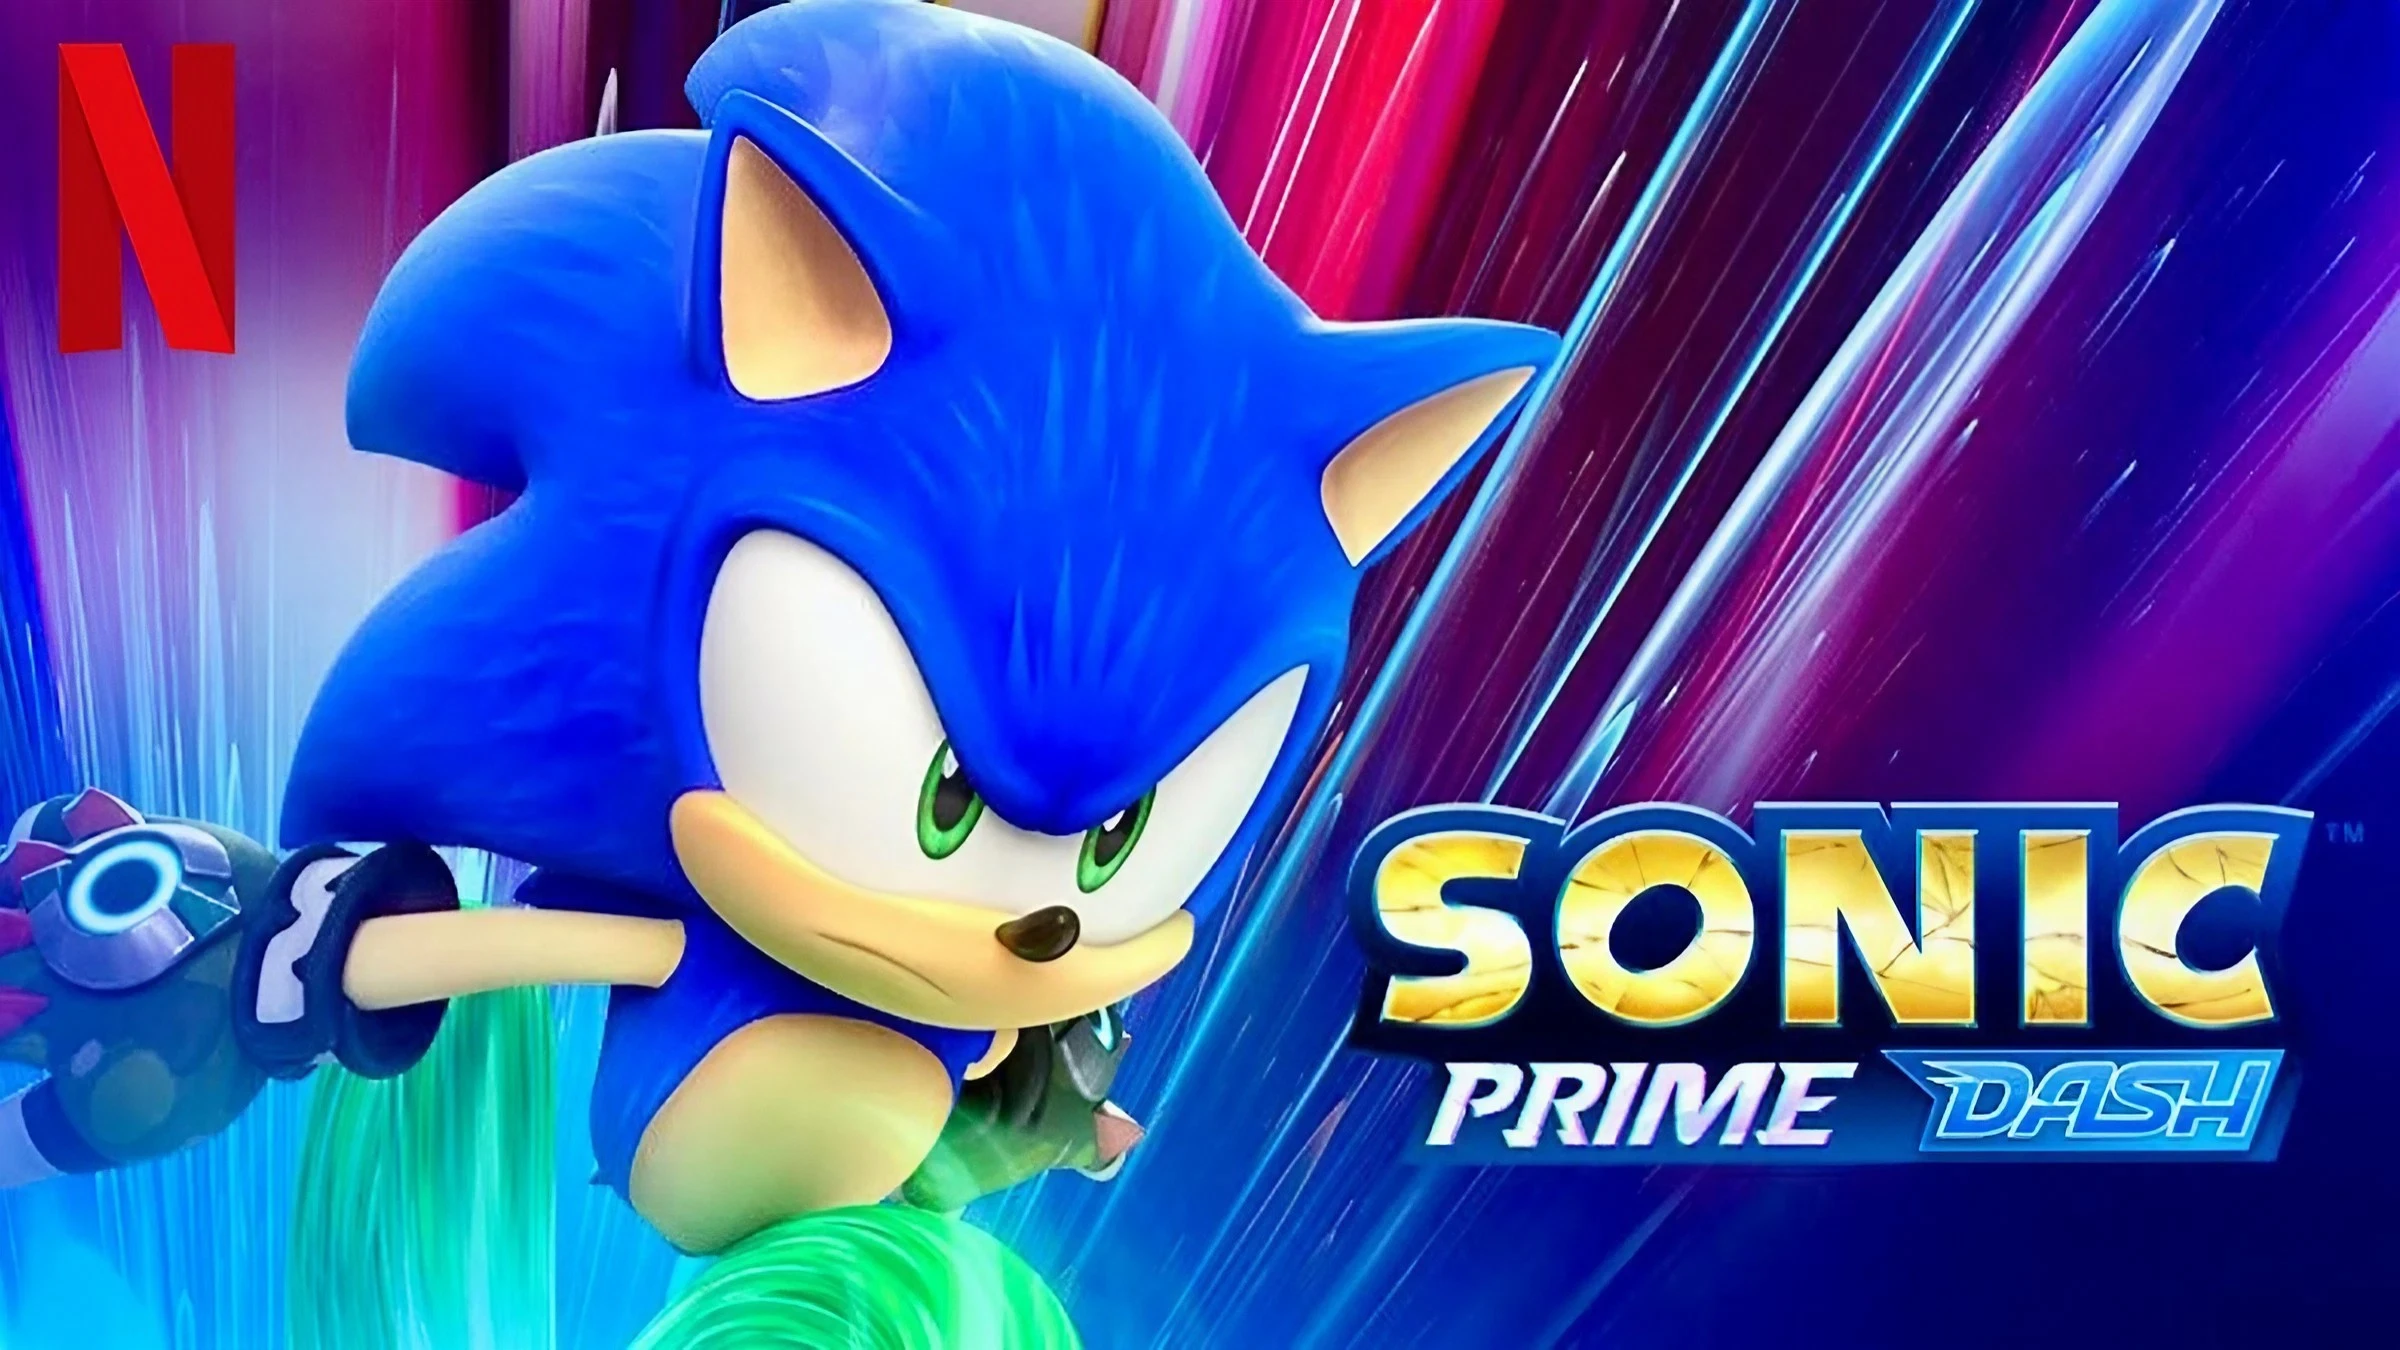 Sonic Boom (1ª Temporada) - 5 de Julho de 2015